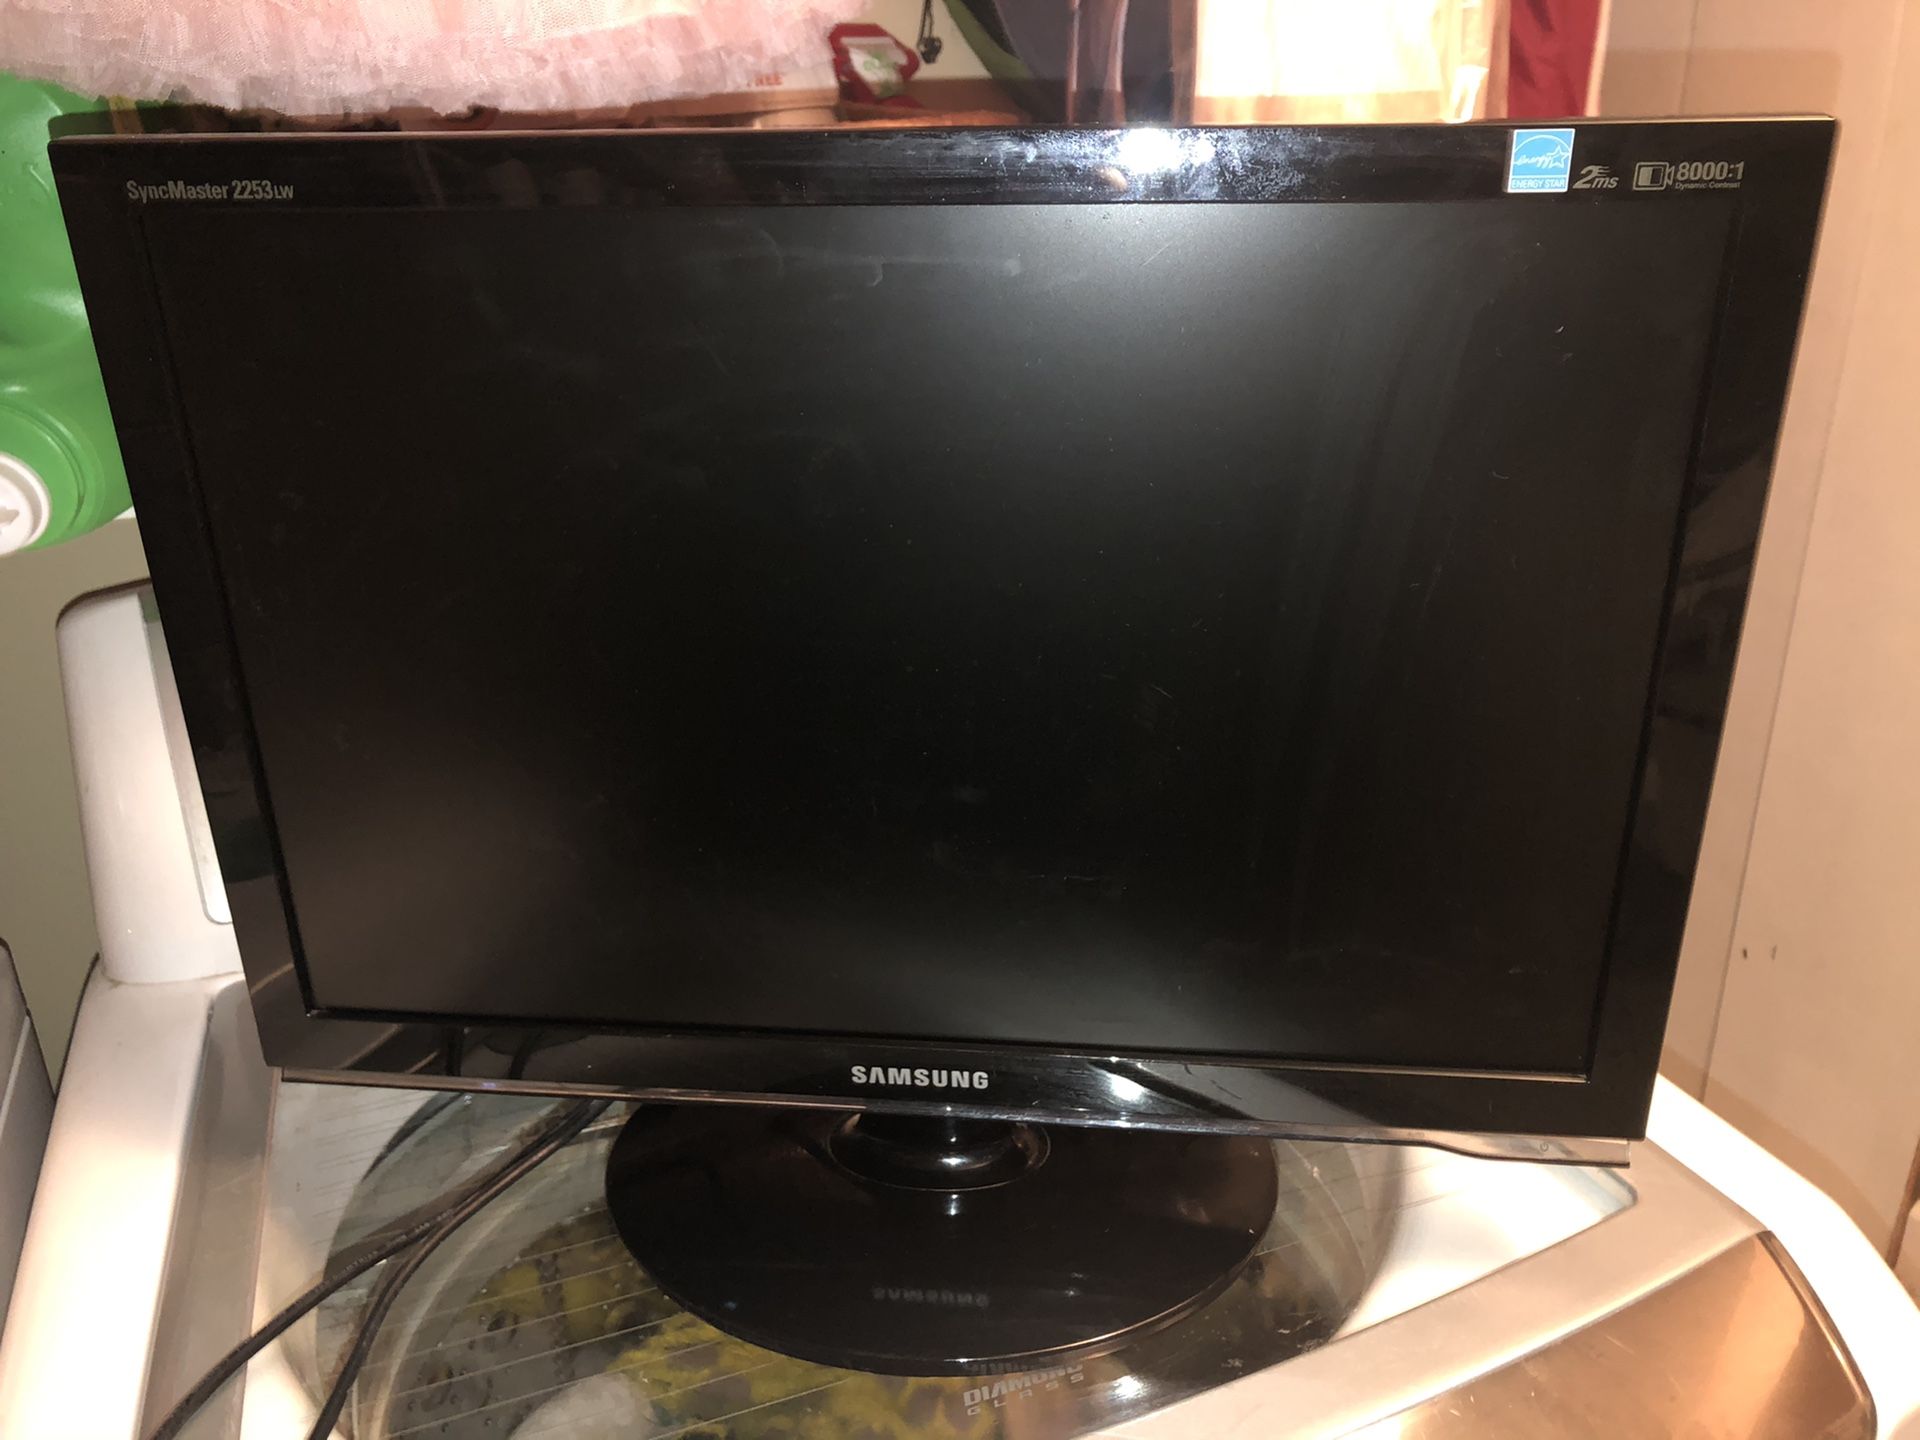 SAMSUNG 21.6” LCD computer monitor